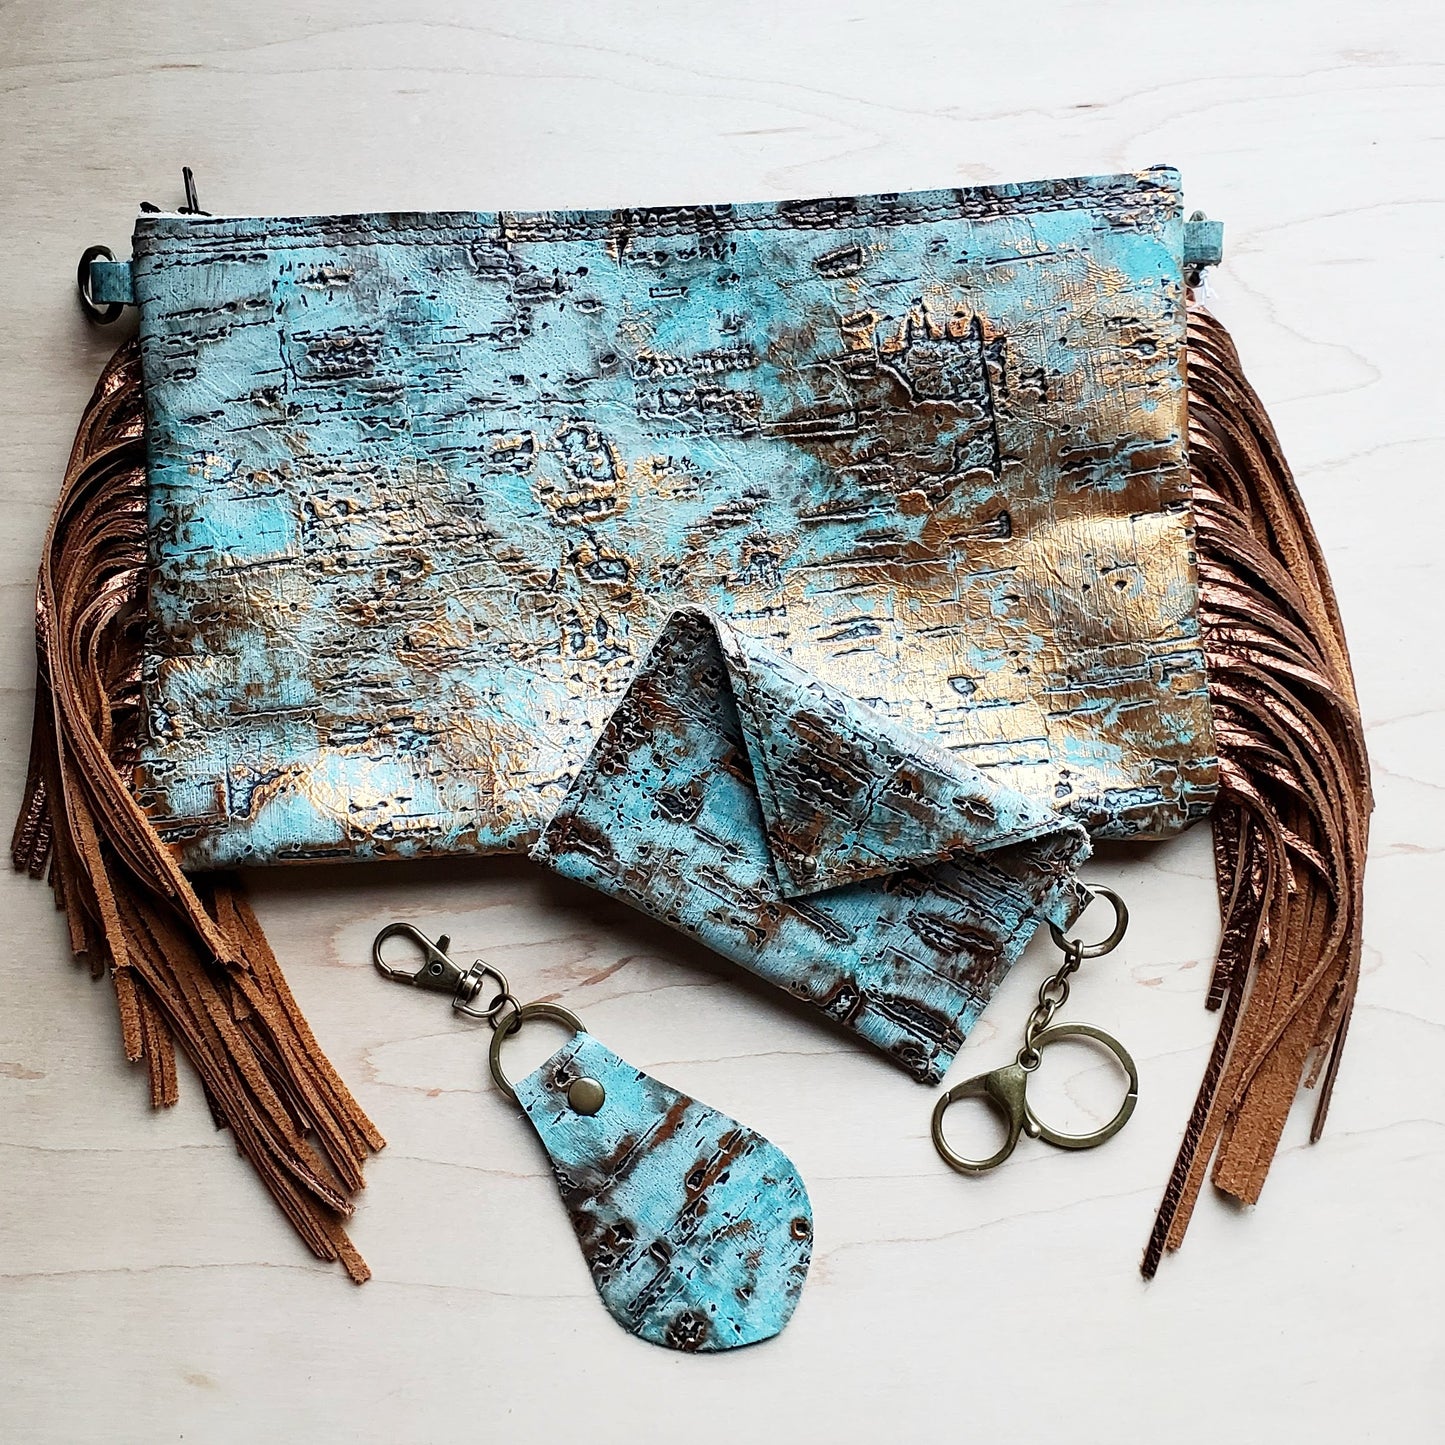 Turquoise Metallic Leather Clutch Handbag 501c